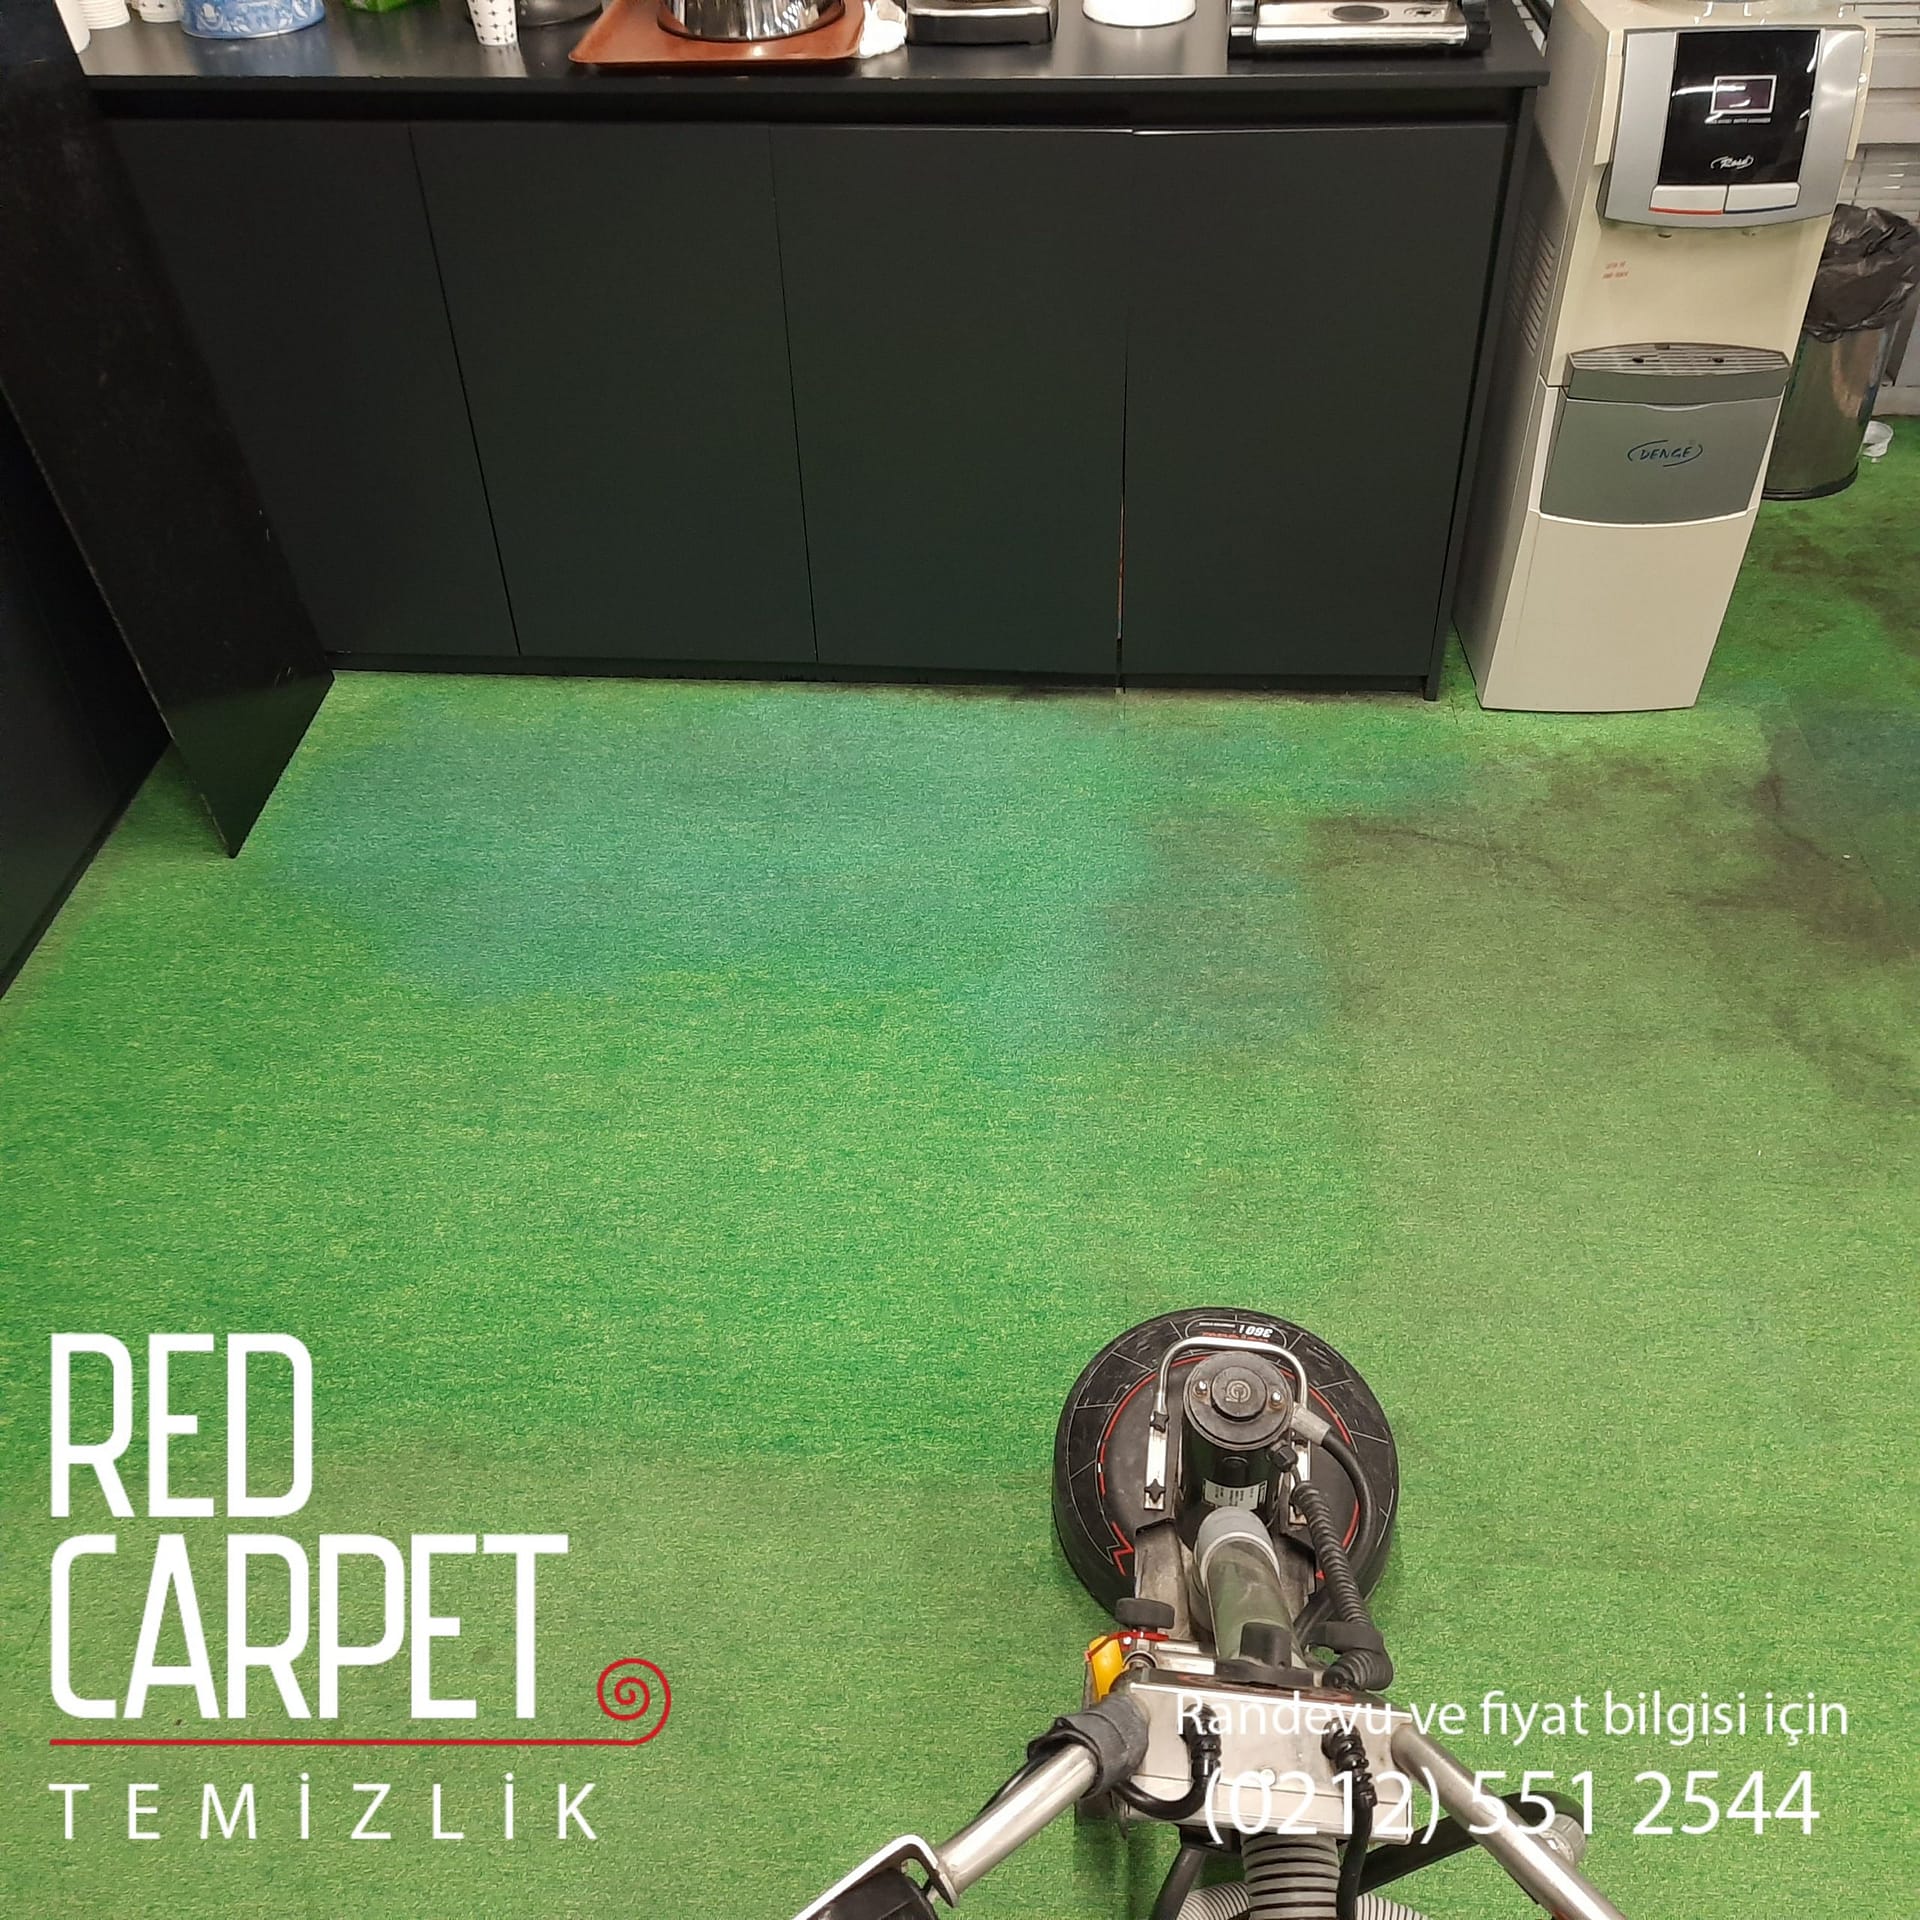 Red Carpet temizlik